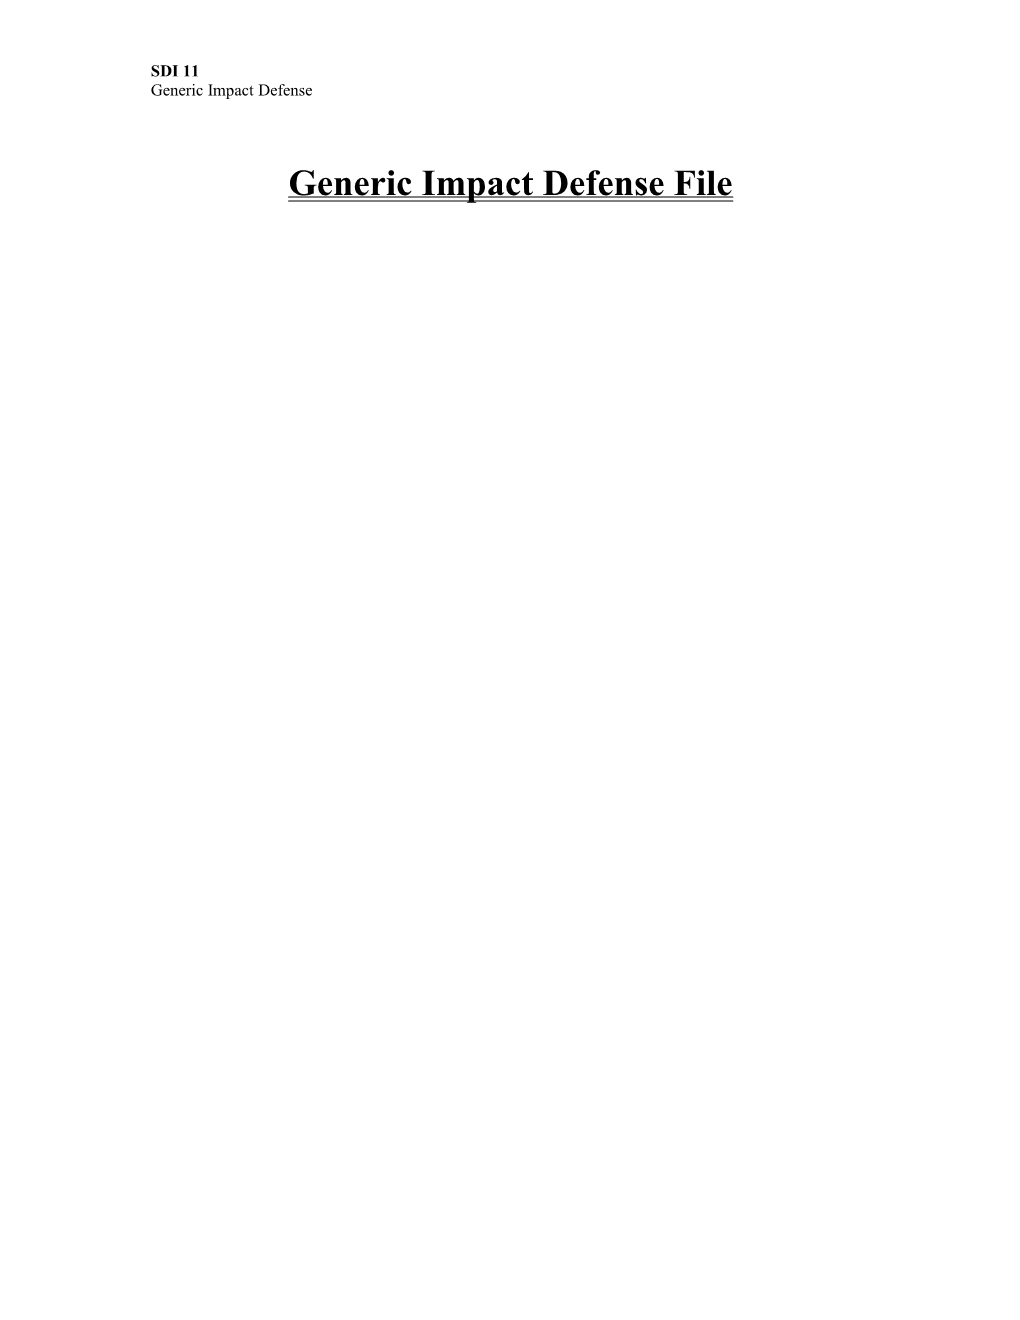 Generic Impact Defense File